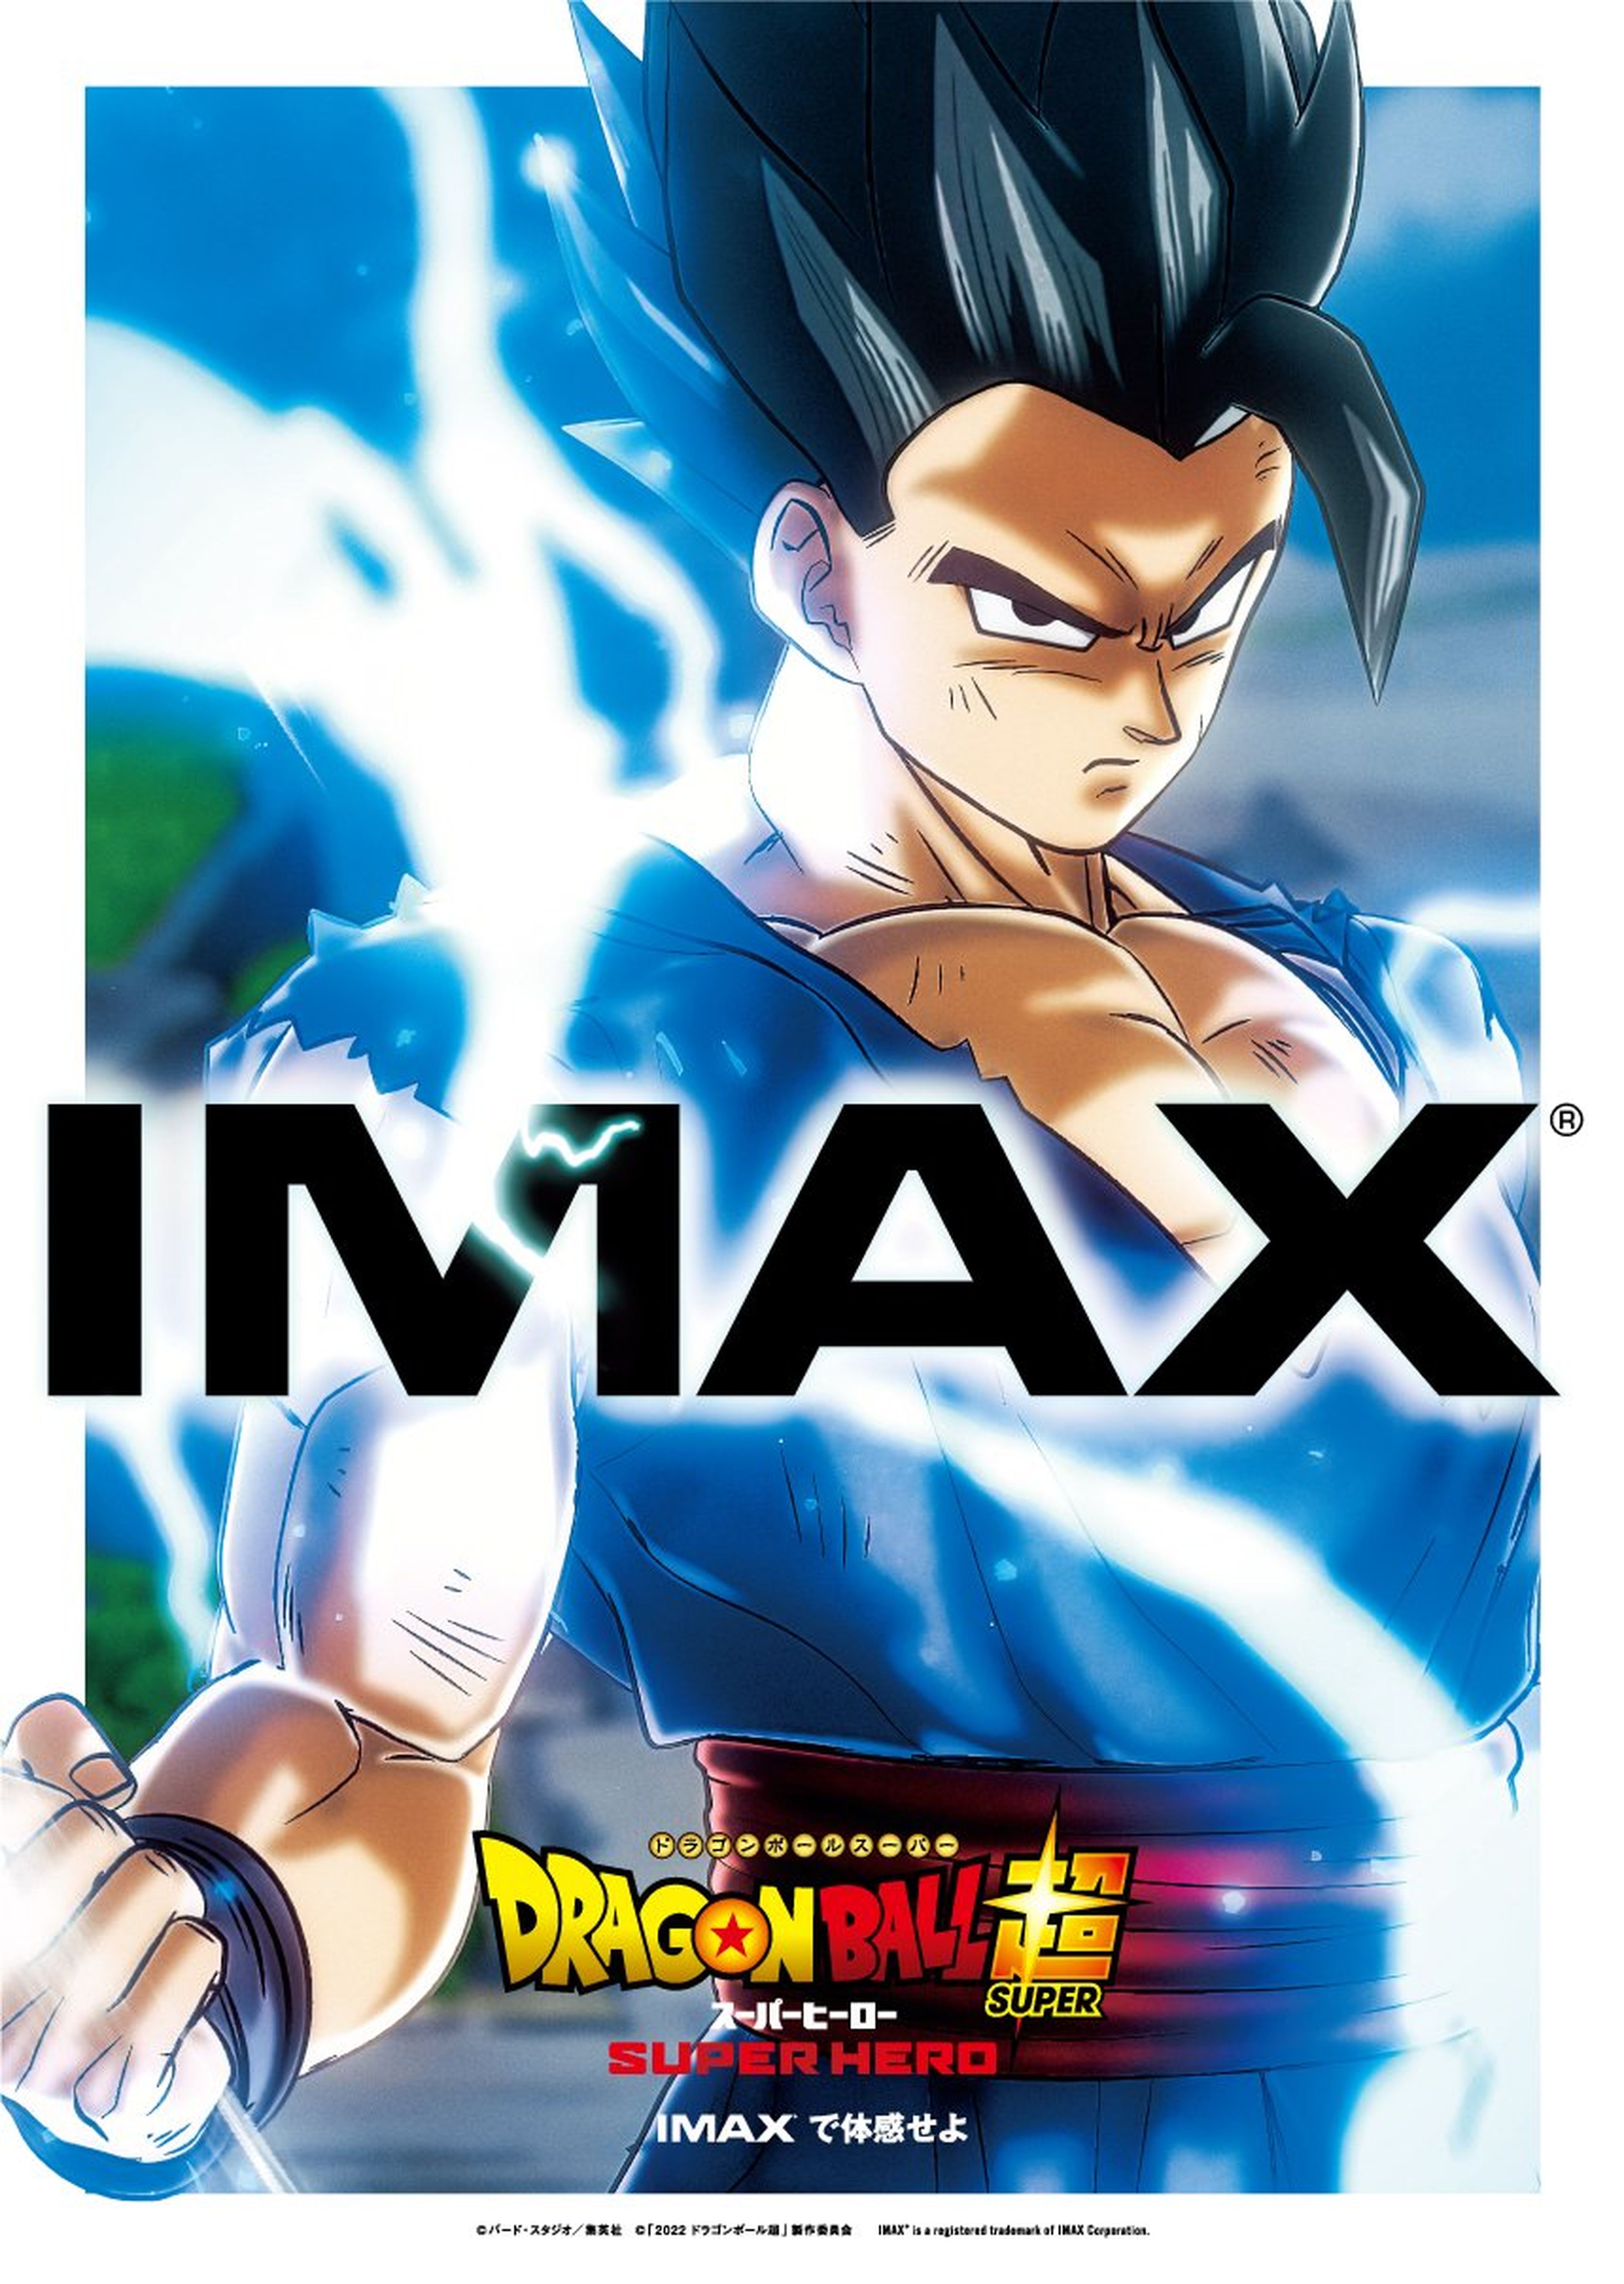 Dragon Ball Super: Super Hero - Así es el espectacular póster IMAX de la película con Gohan como protagonista absoluto. ¡El sueño de los fans!